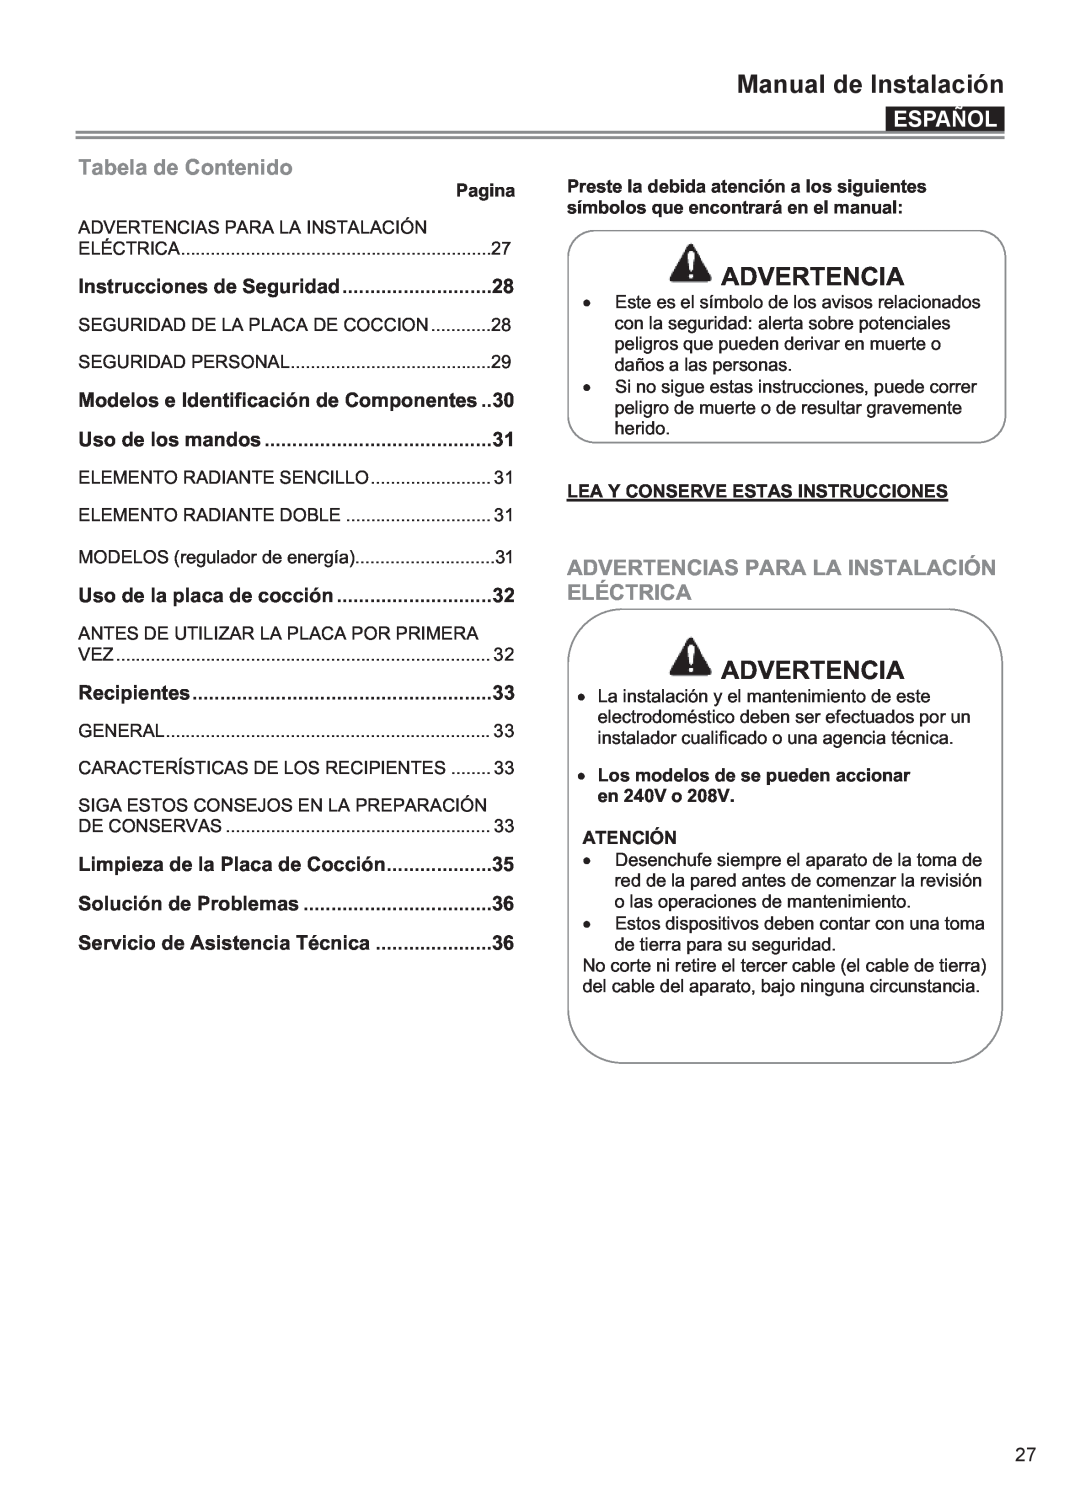 Bertazzoni P24 CER NE Español, Tabela de Contenido, Advertencias Para La Instalación, Eléctrica, Pagina, en 240V o 